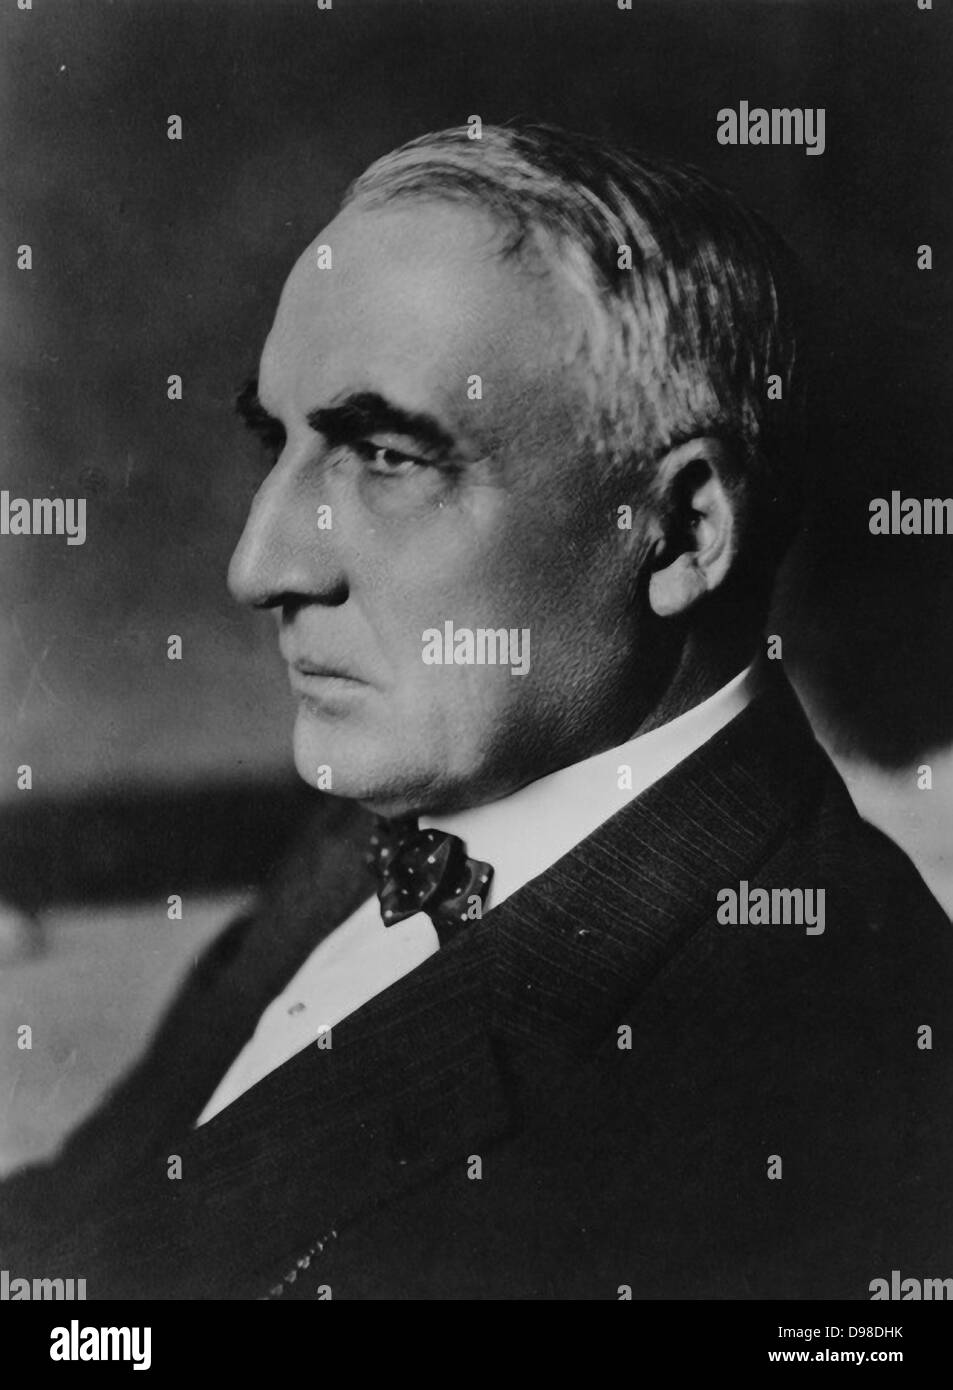 Warren Harding (1885-1923), 29. Präsident der Vereinigten Staaten von Amerika, 1921-1923. Harding starb an einem Herzinfarkt oder Schlaganfall am 2. August 1923 und wurde von seinem Vizepräsidenten Calvin Coolidge gelungen. Stockfoto